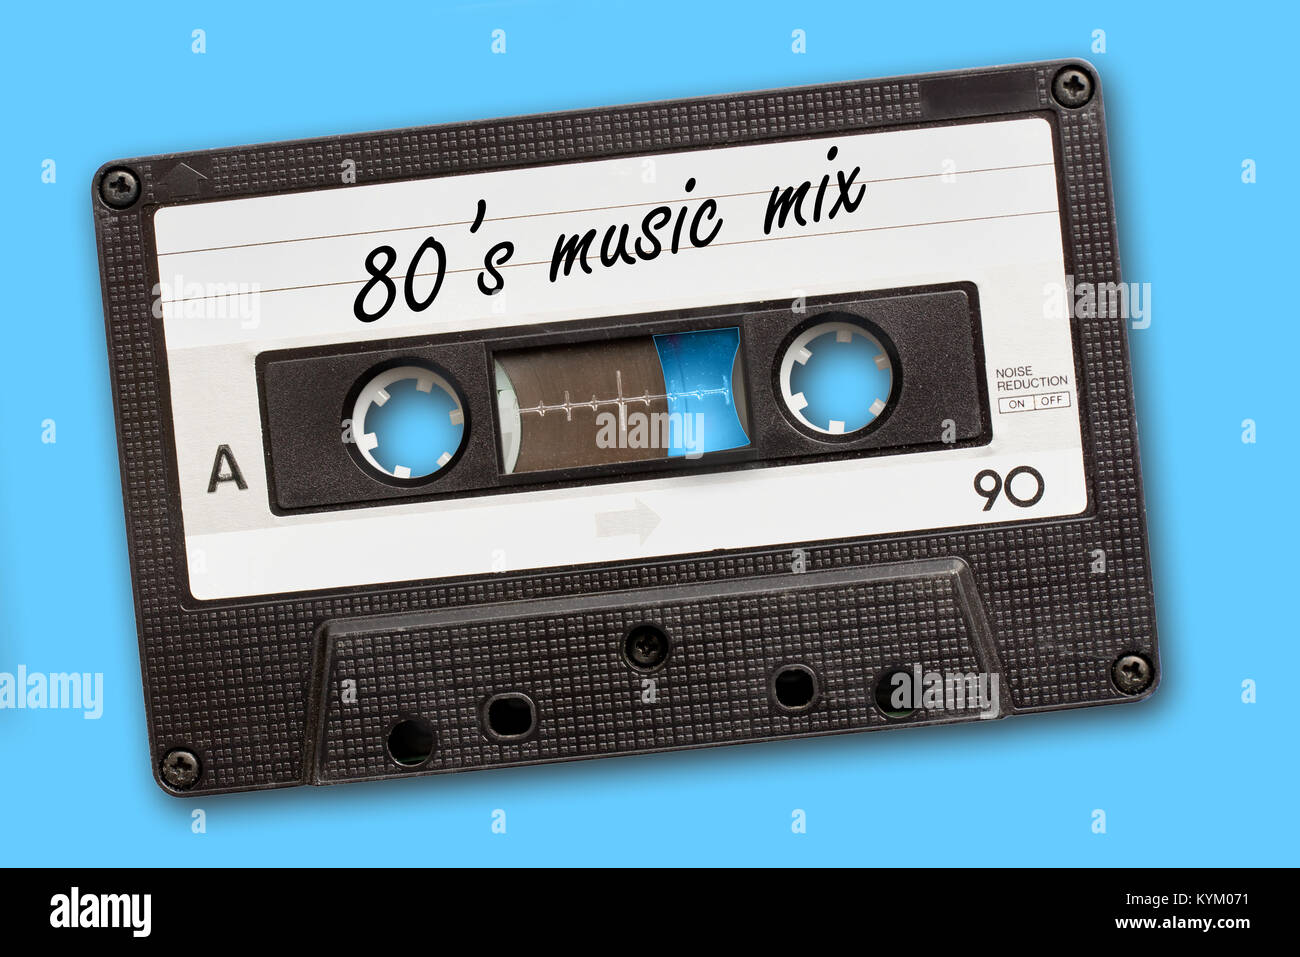 80's Music mix écrit sur vintage cassette audio, sur fond bleu Banque D'Images